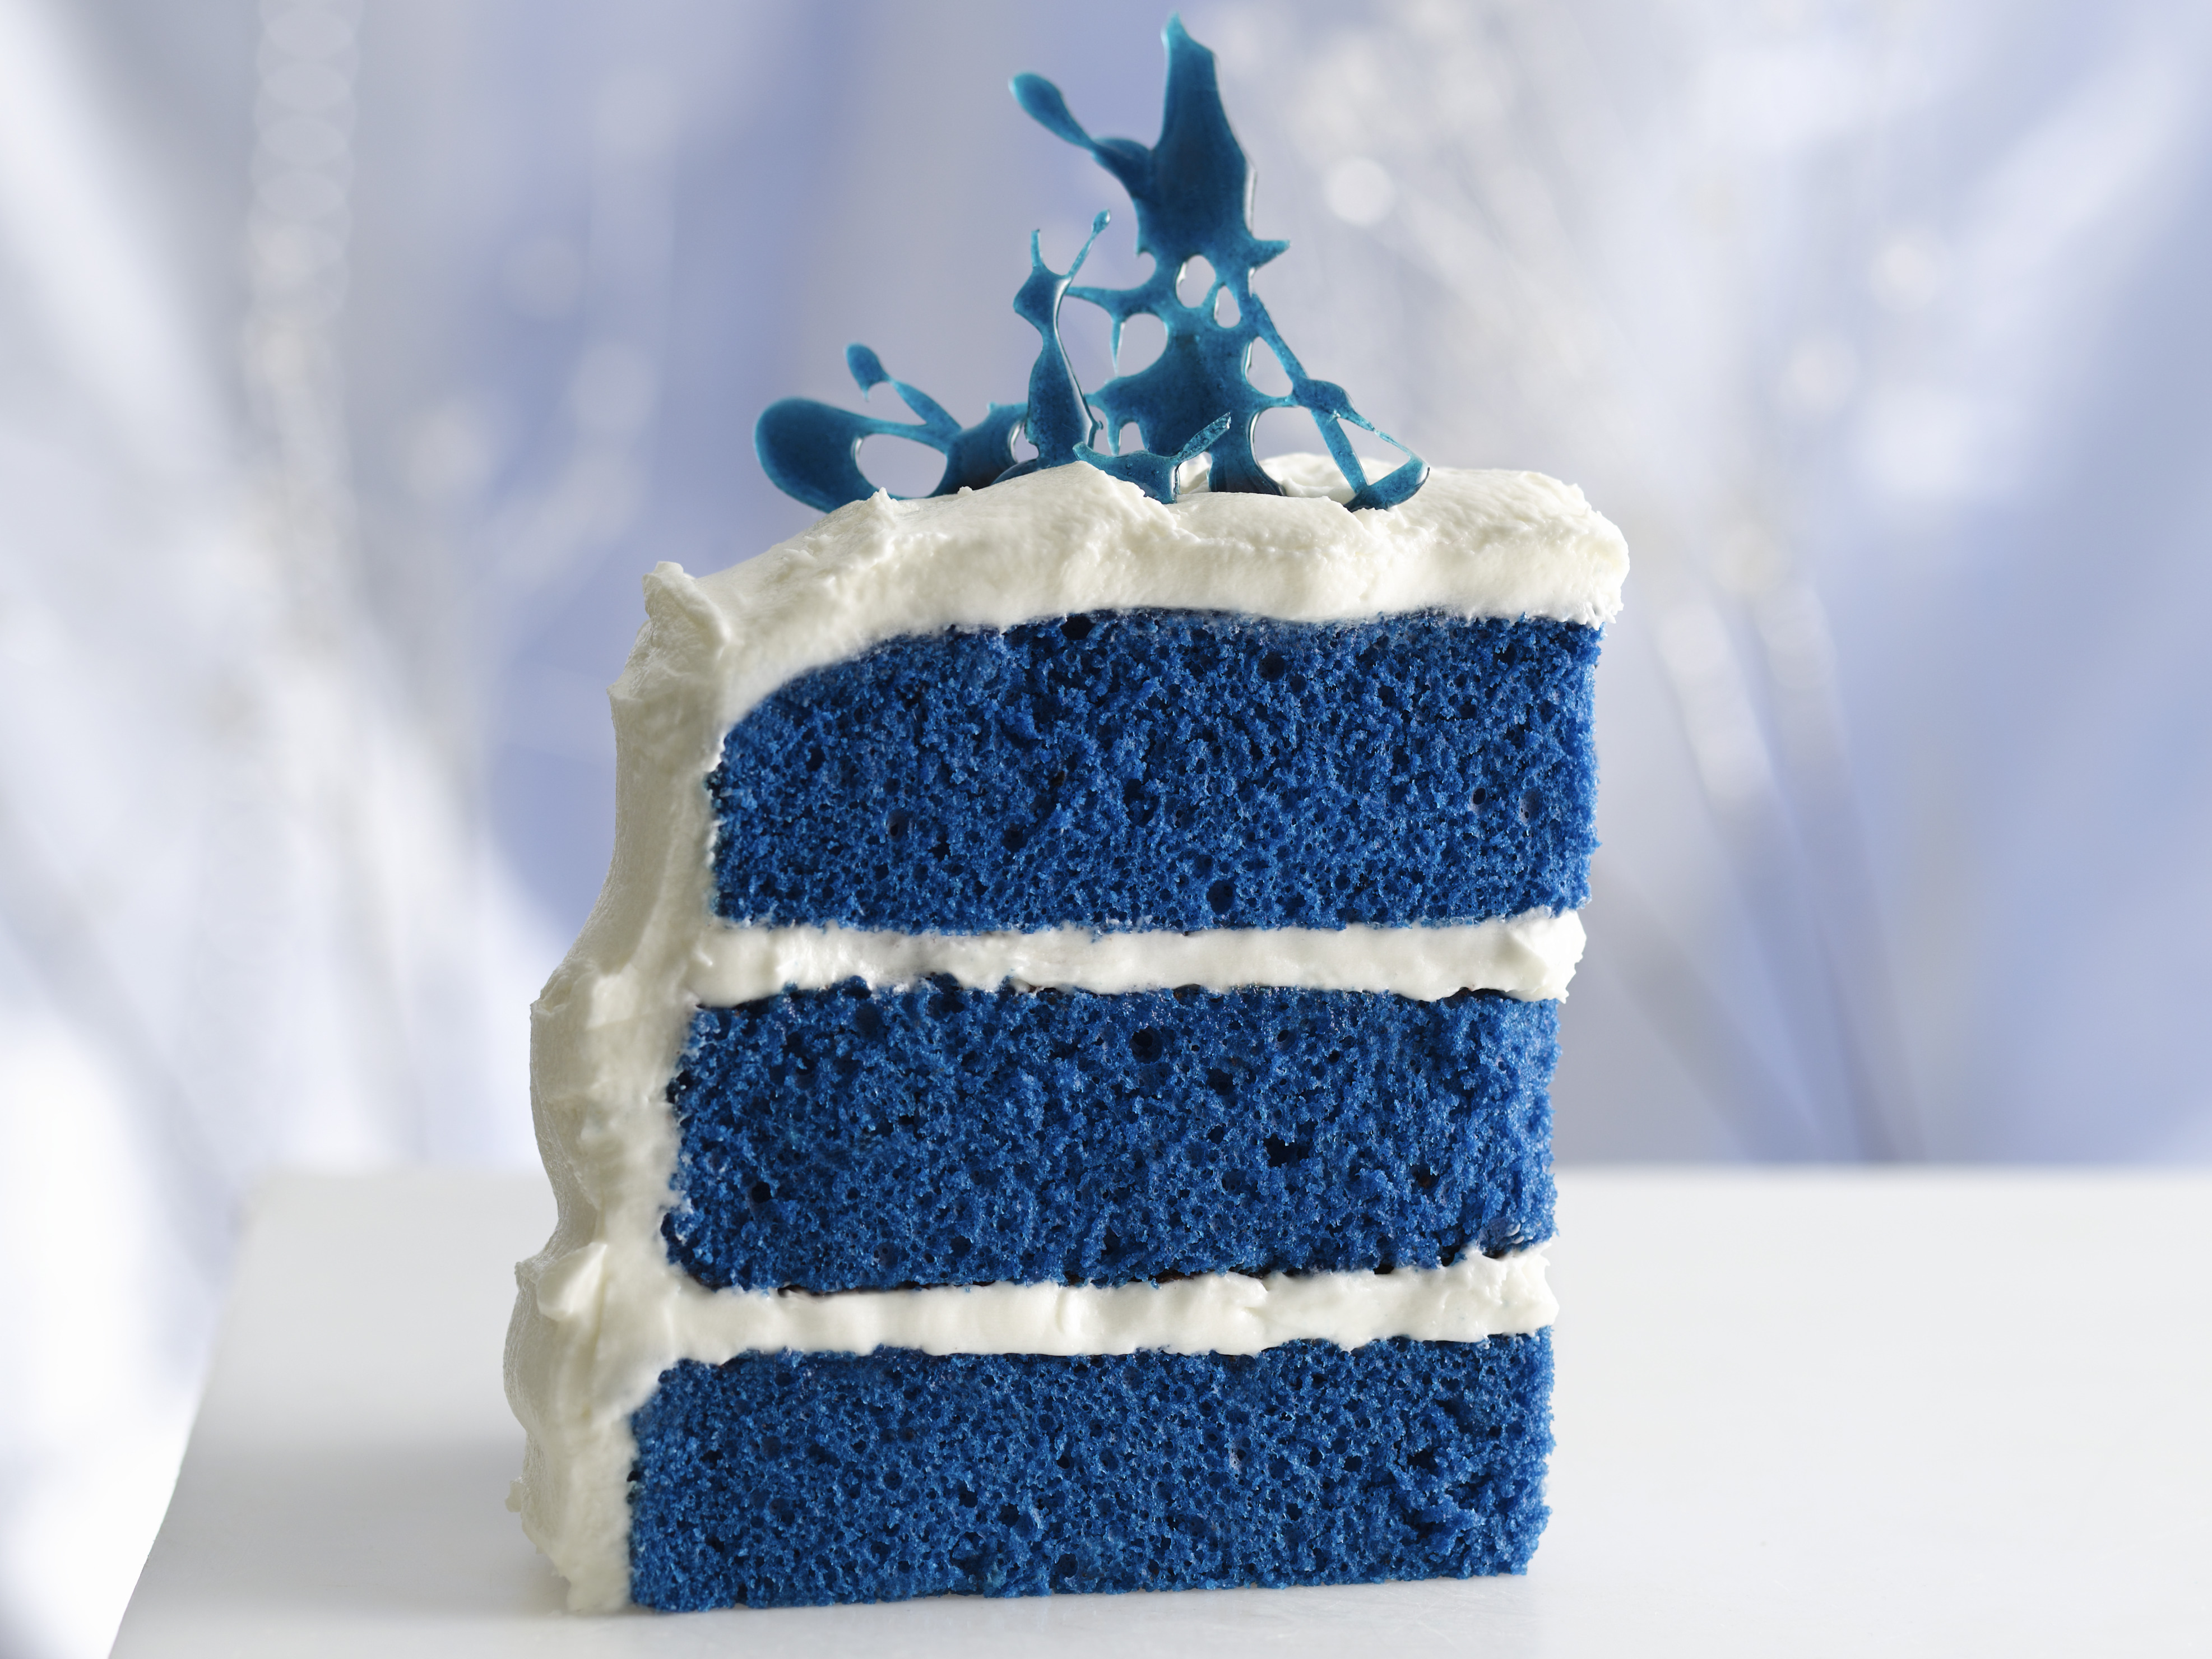 Buy Premium Blueberry Cake Online | Velvet Cake | Free Delivery